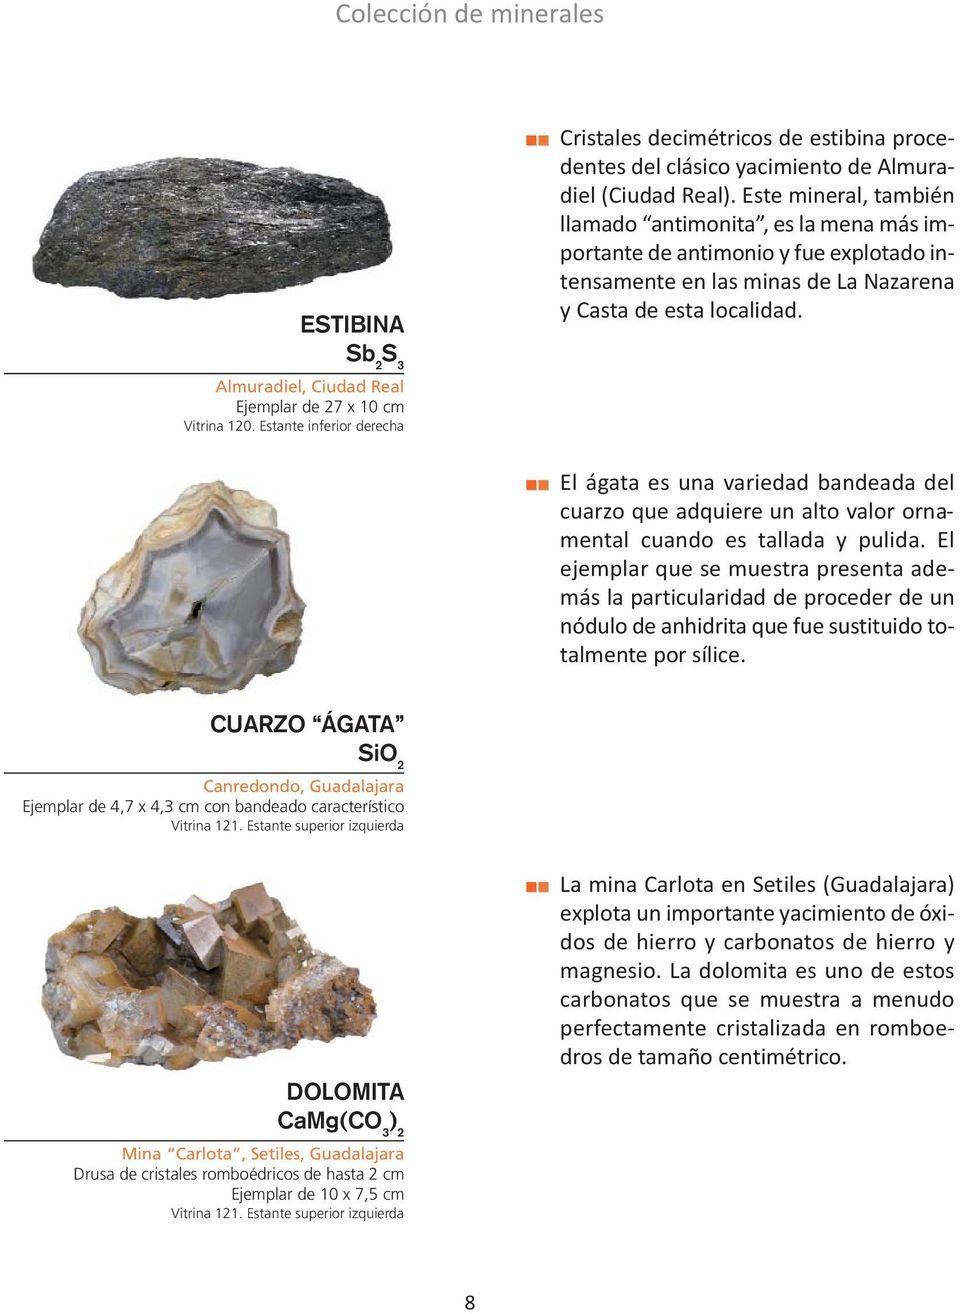 Este mineral, también llamado antimonita, es la mena más importante de antimonio y fue explotado intensamente en las minas de La Nazarena y Casta de esta localidad.